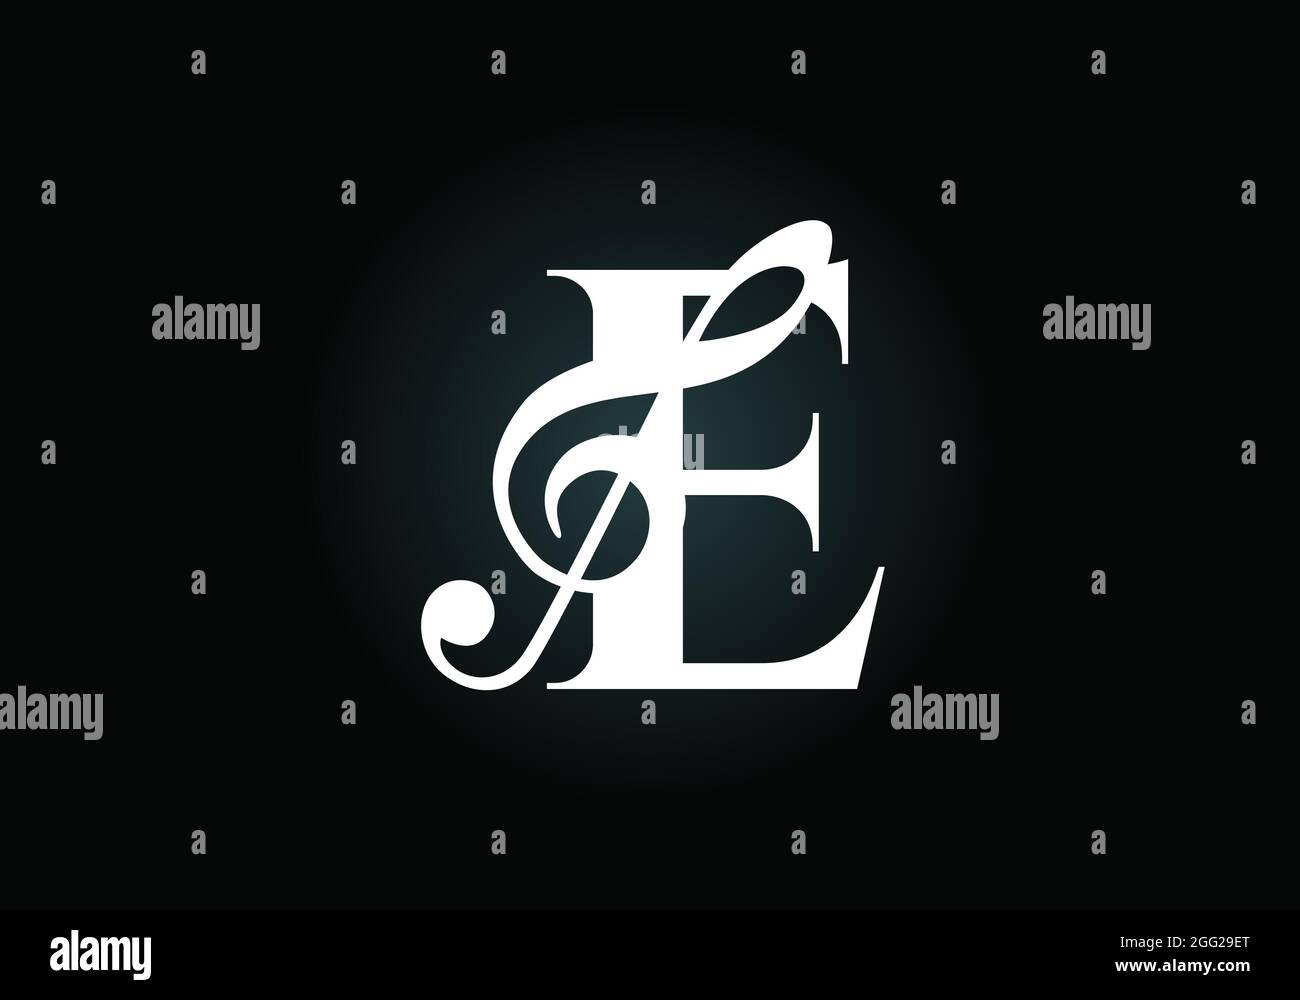 Anfängliches E-Monogramm-Alphabet mit einer musikalischen Note. Symphonie- oder Melodiezeichen. Symbol für Musikzeichen. Schrift-Emblem. Moderne Vektor-Logo-Design-Vorlage. Stock Vektor